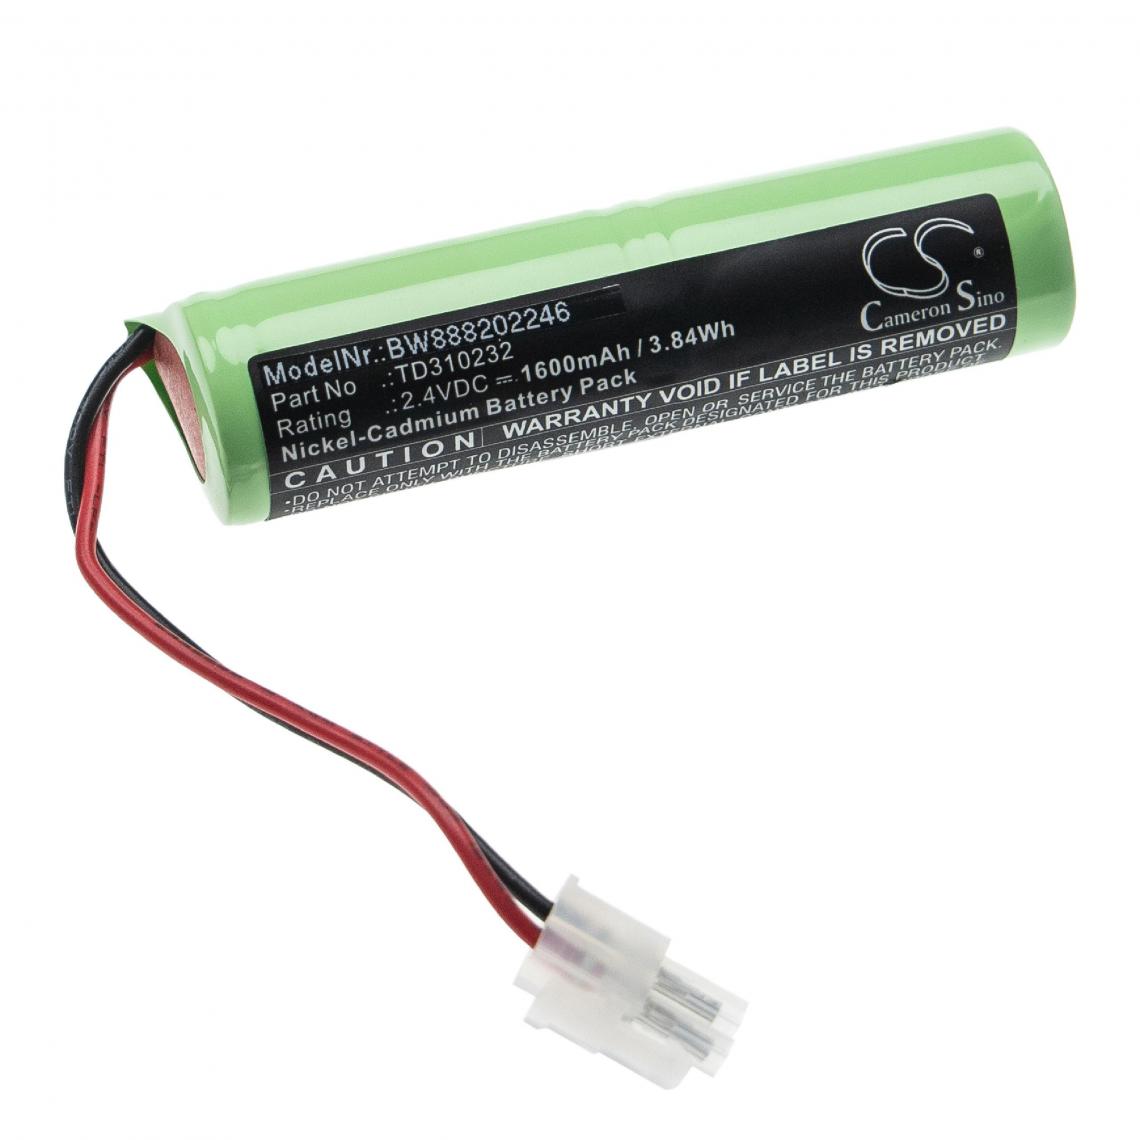 Vhbw - vhbw Batterie remplacement pour Schneider TD310232 pour éclairage d'issue de secours (1600mAh, 2,4V, NiCd) - Autre appareil de mesure